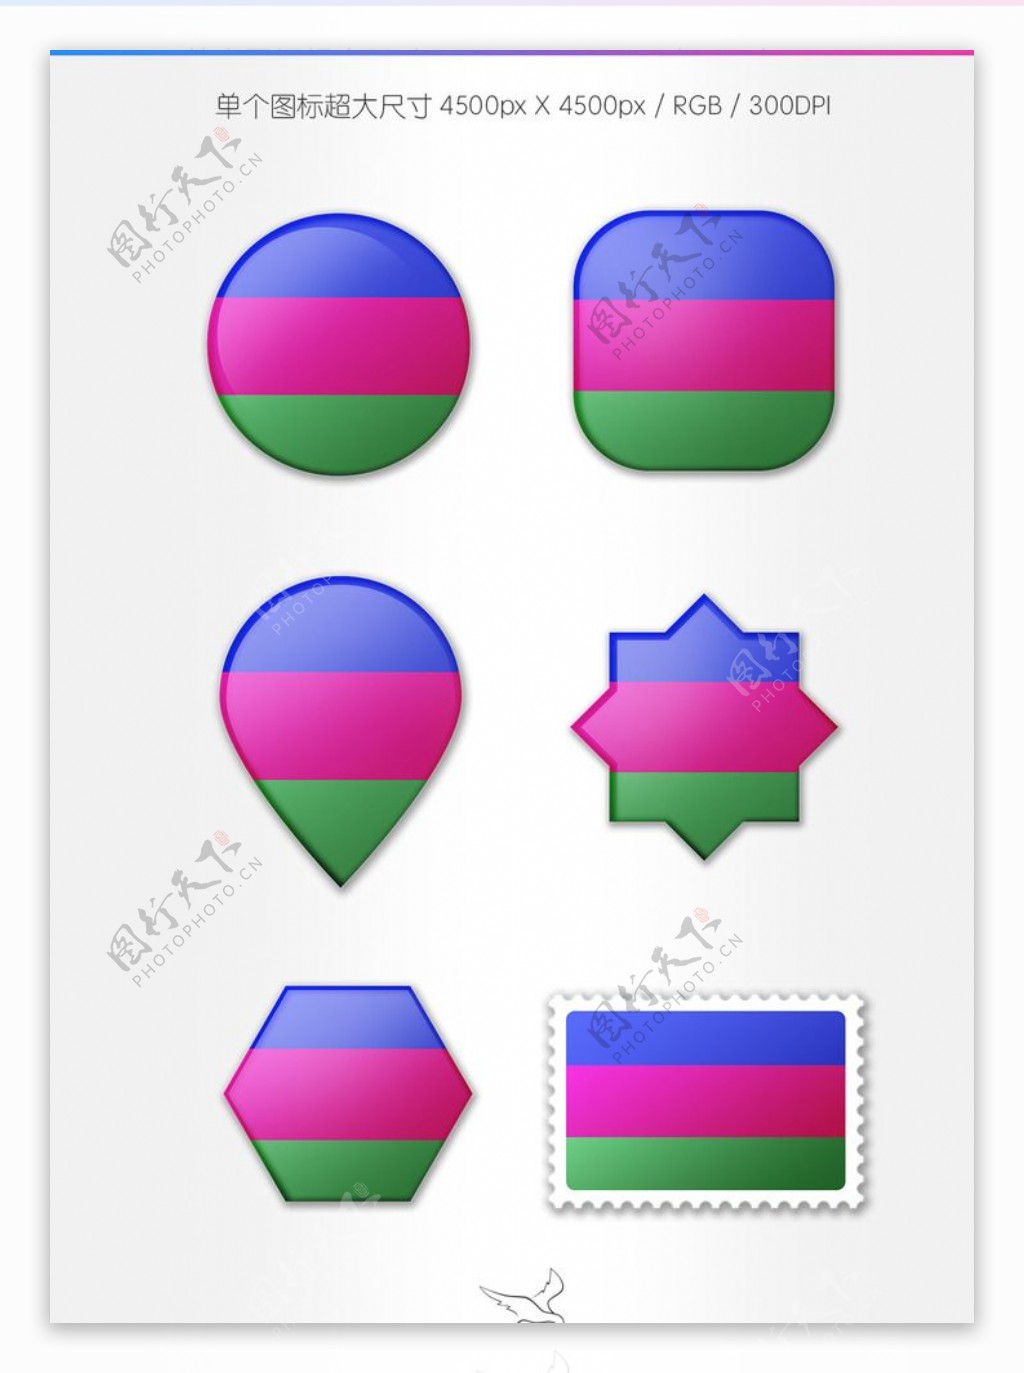 库班人民共和国国旗图标